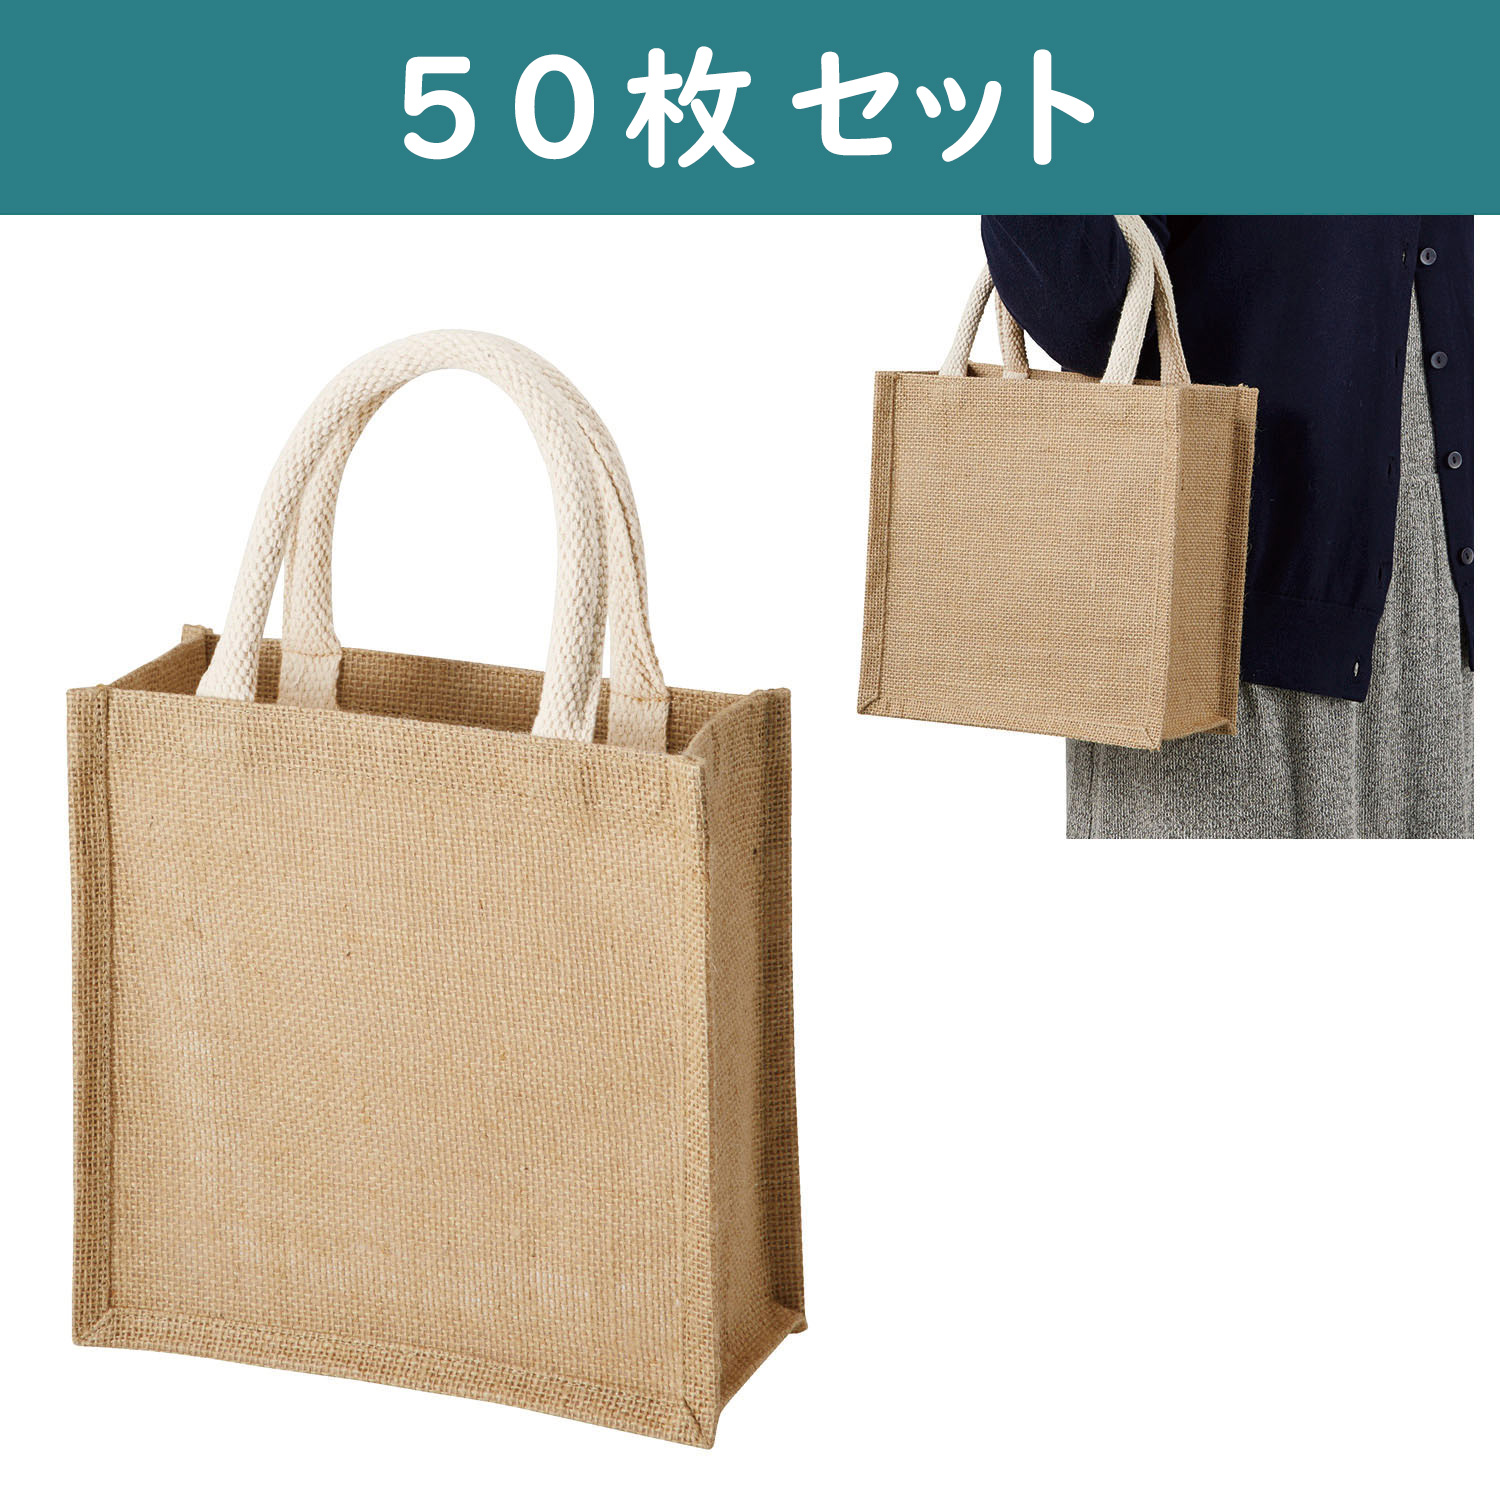 ES317-5 Jute Square bag Natural beige （Small size） 50pcs set (set)